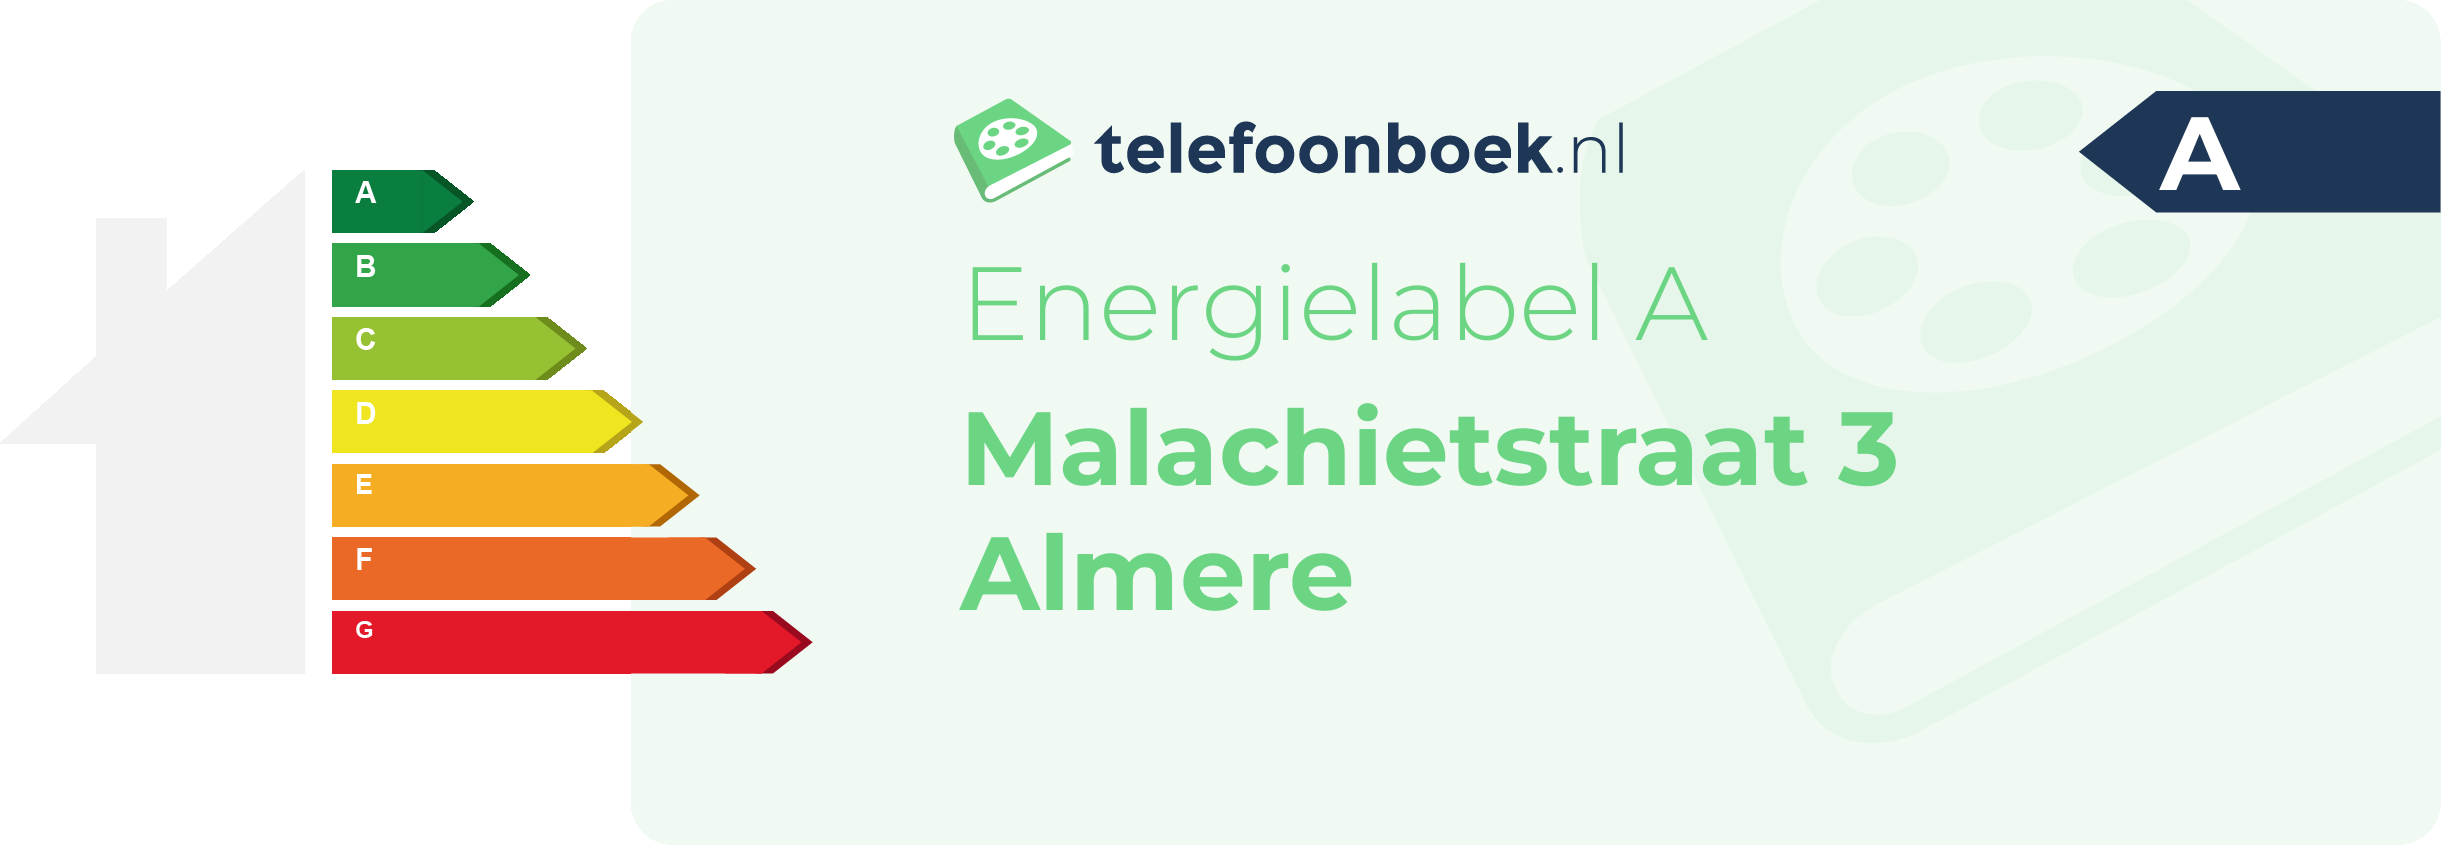 Energielabel Malachietstraat 3 Almere